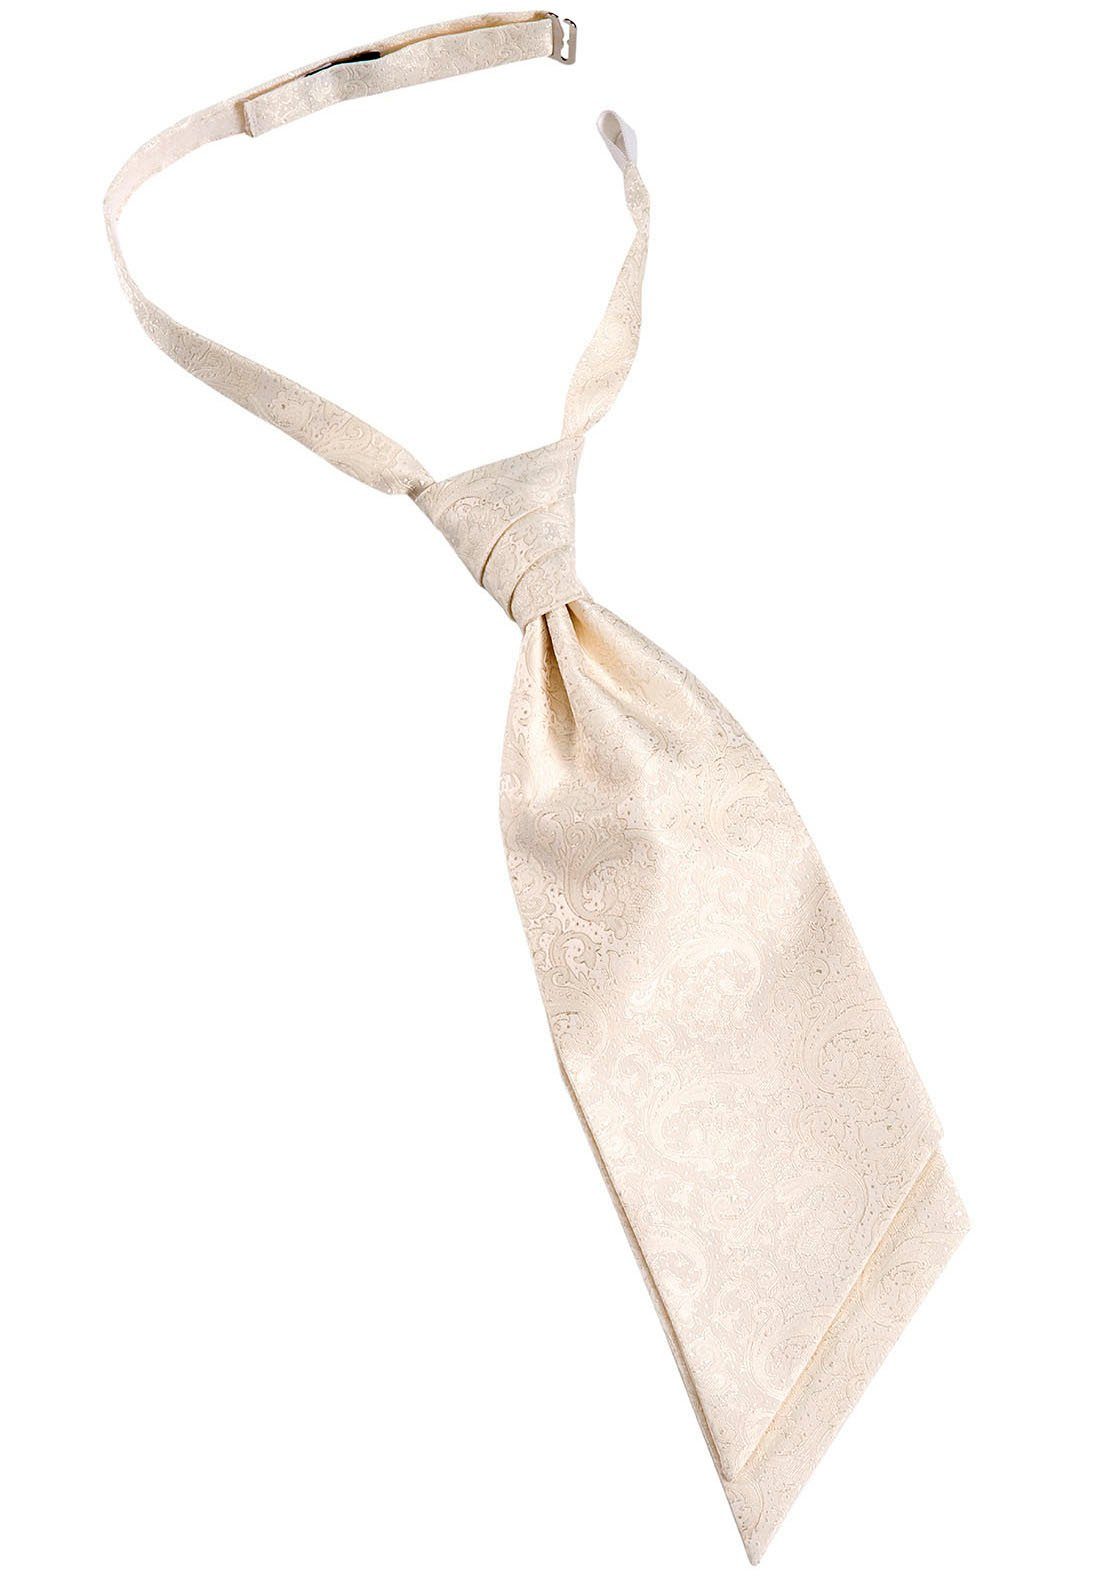 Qualität geht vor [berühmt] MONTI Krawatte champagner mit Hochzeits-Plastron, festlichem ALESSIO Paisley-Muster